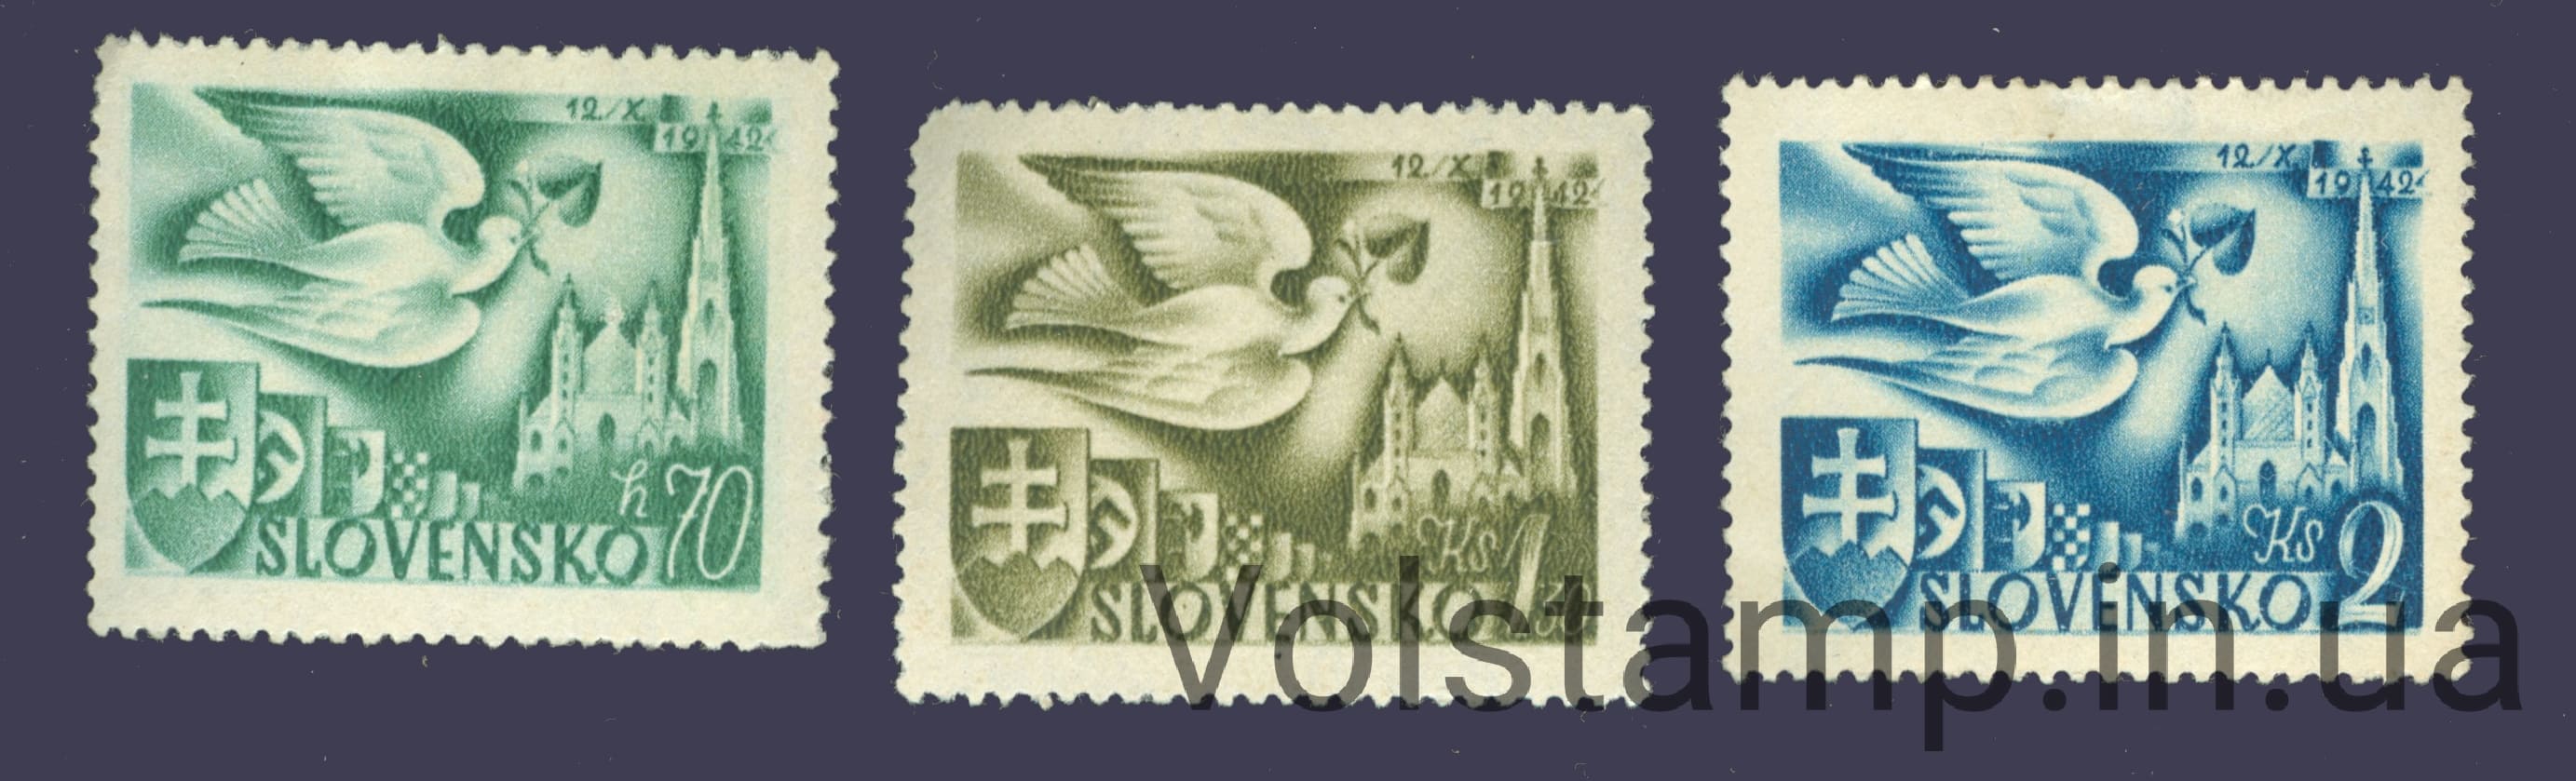 1942 Словакия Серия марок (Птицы) с наклейкой №102-104